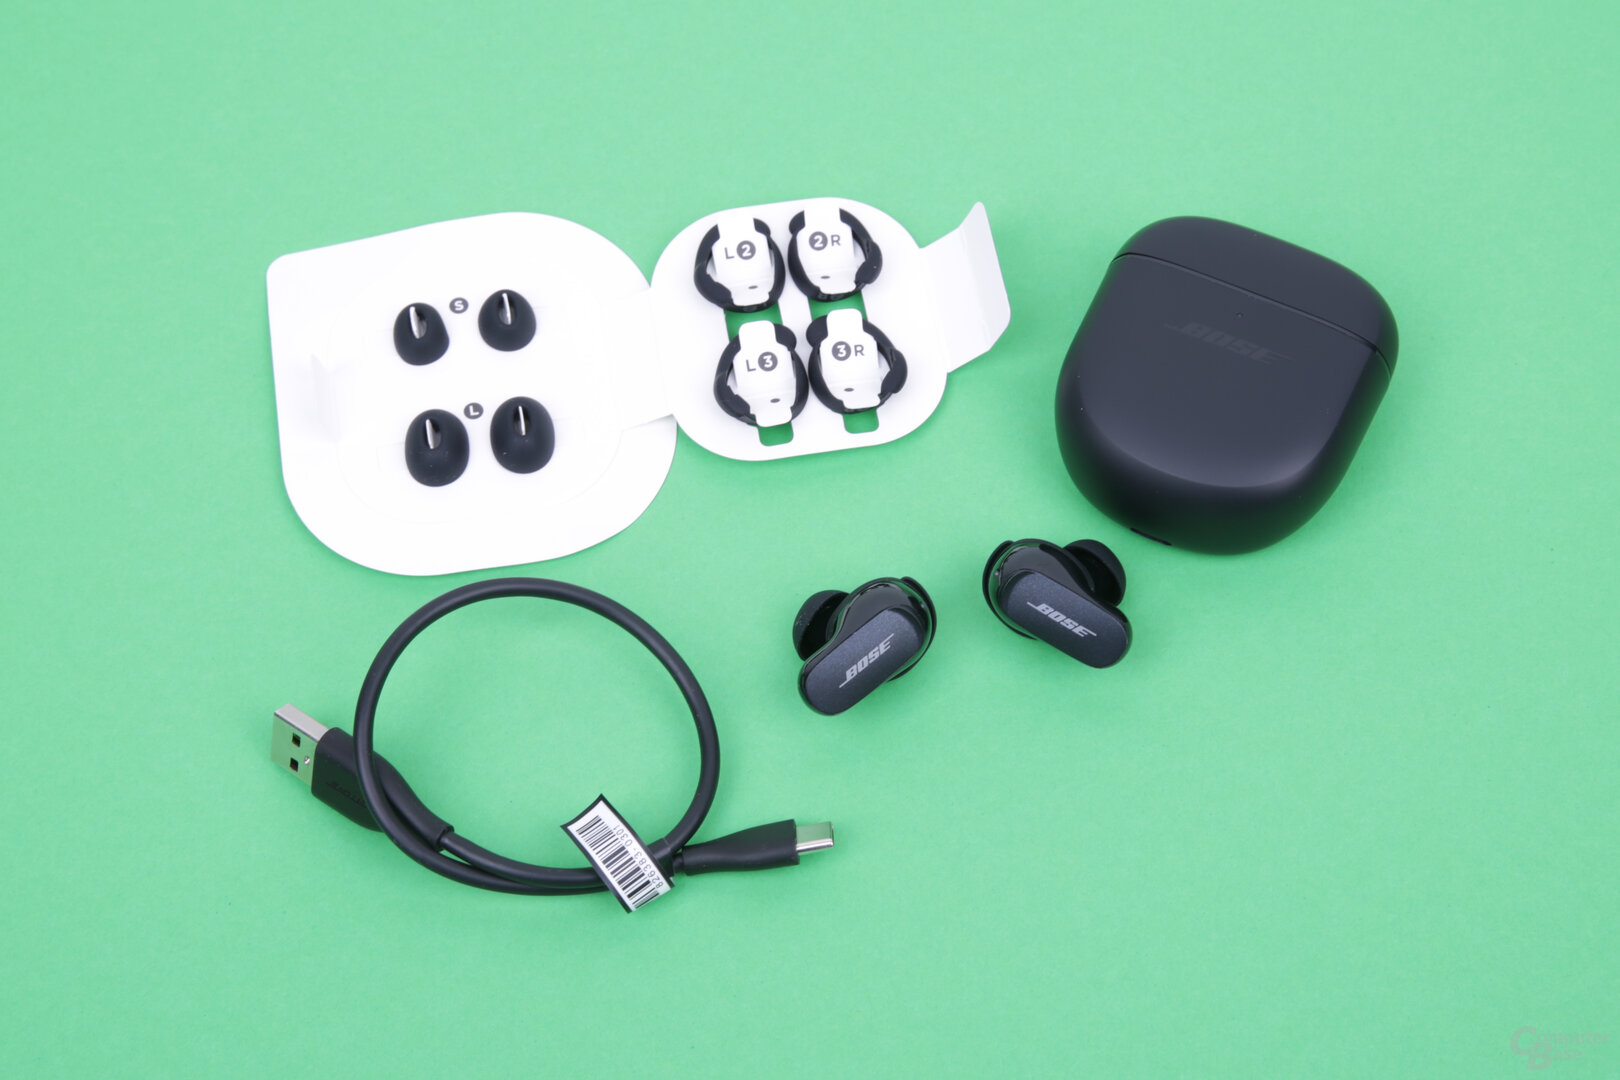 Bose QuietComfort Earbuds II im Test: Die besten ANC-In-Ears - ComputerBase